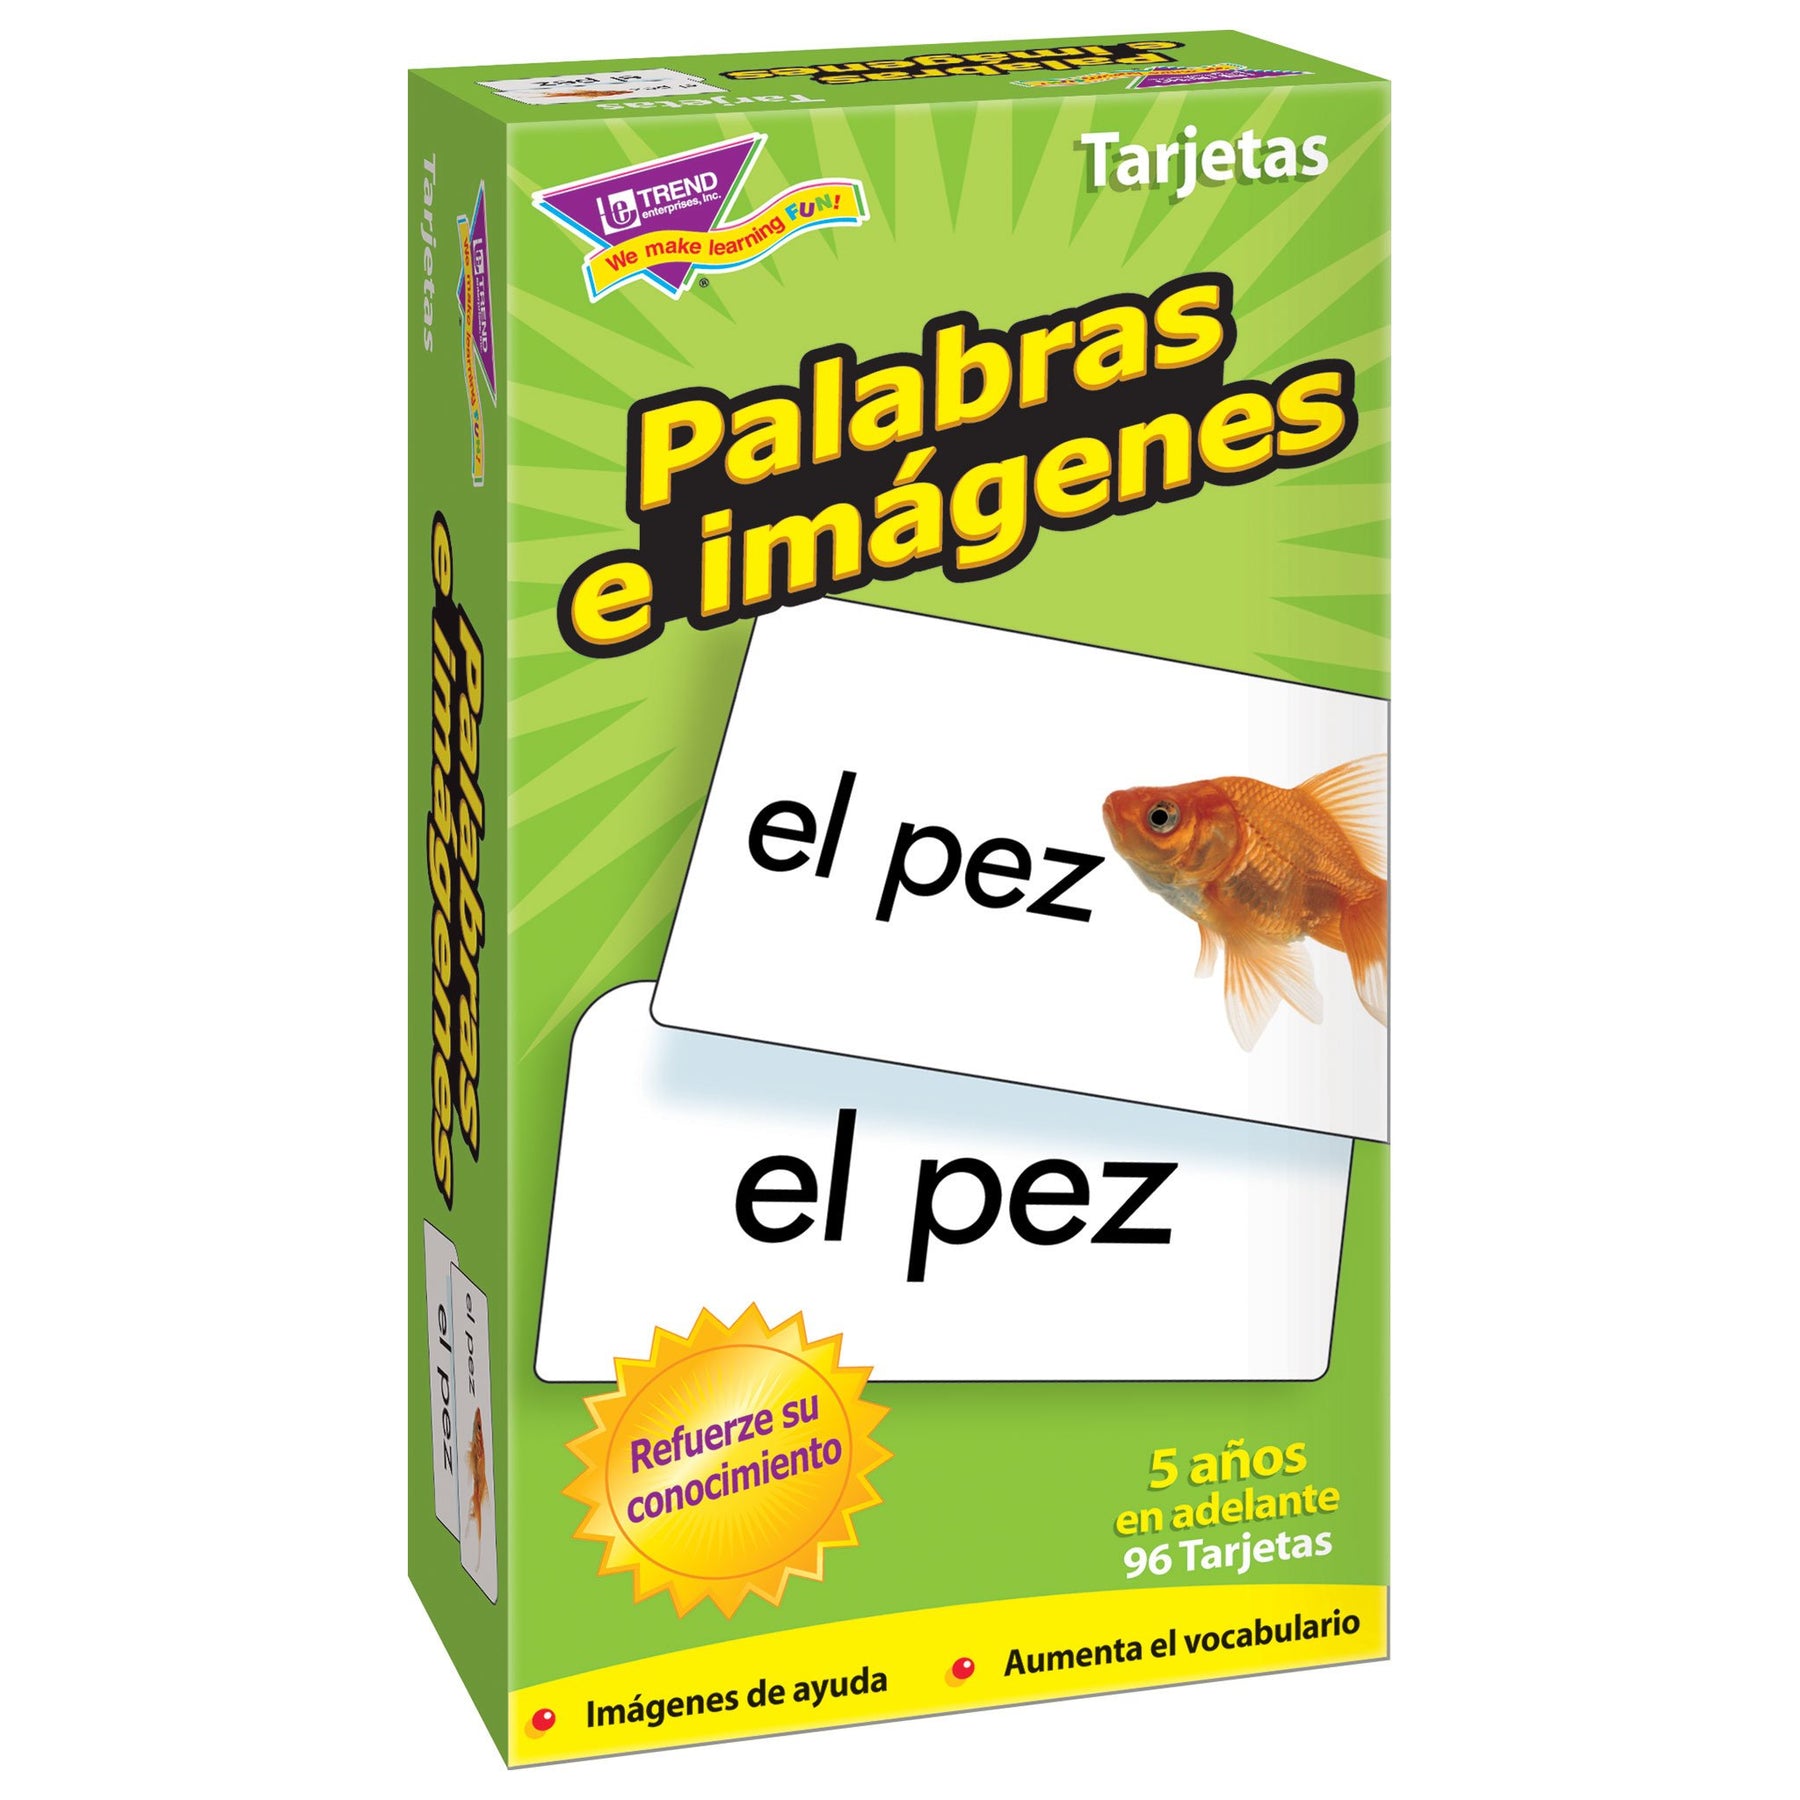 Vocabulário – Página: 10 – Inglês Winner